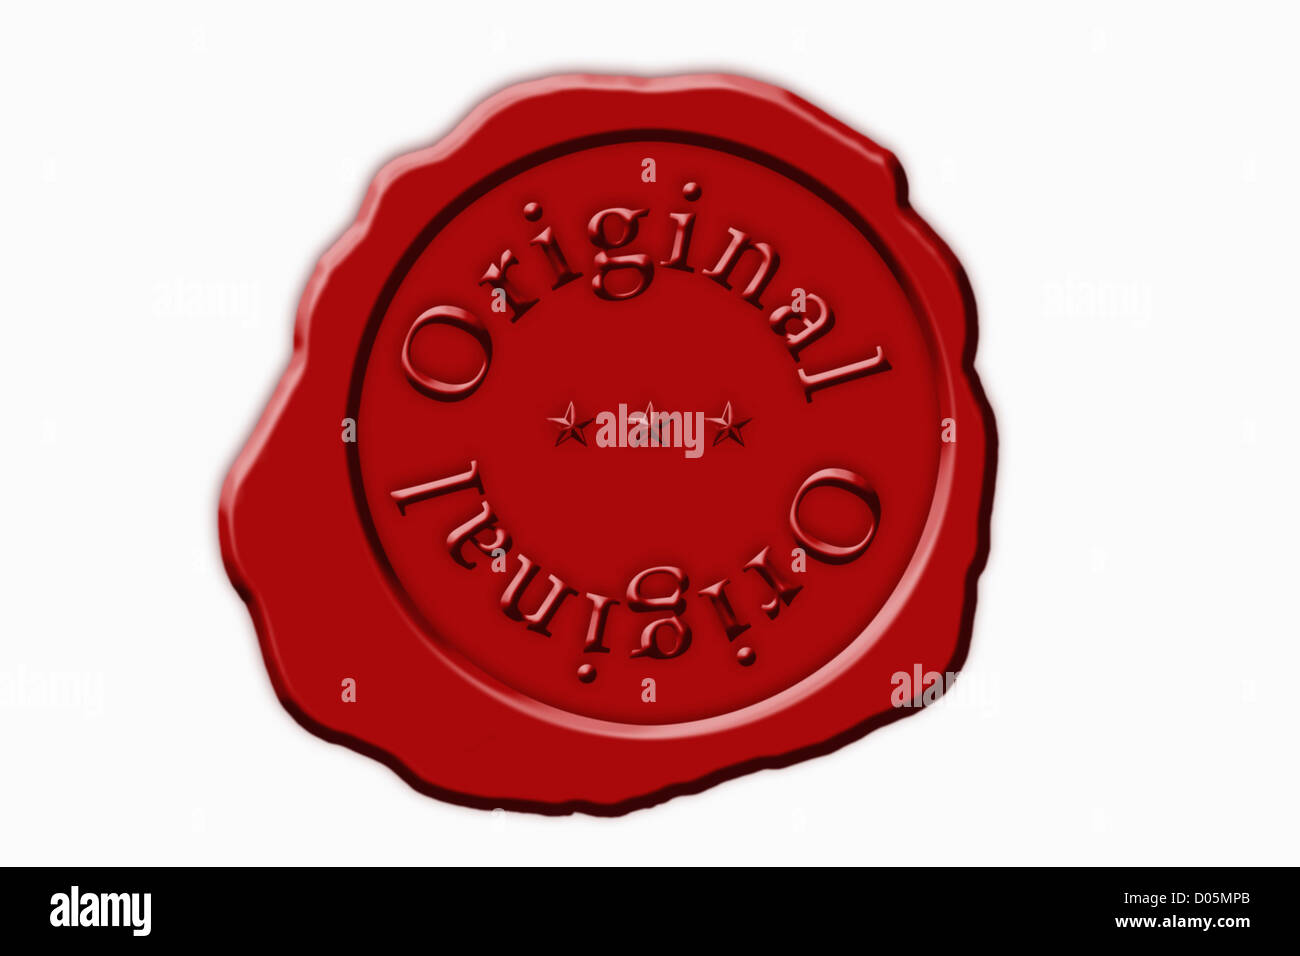 Detailansicht eines roten Siegels mit der Aufschrift originale | Dettaglio foto di un sigillo rosso con la scritta originale Foto Stock